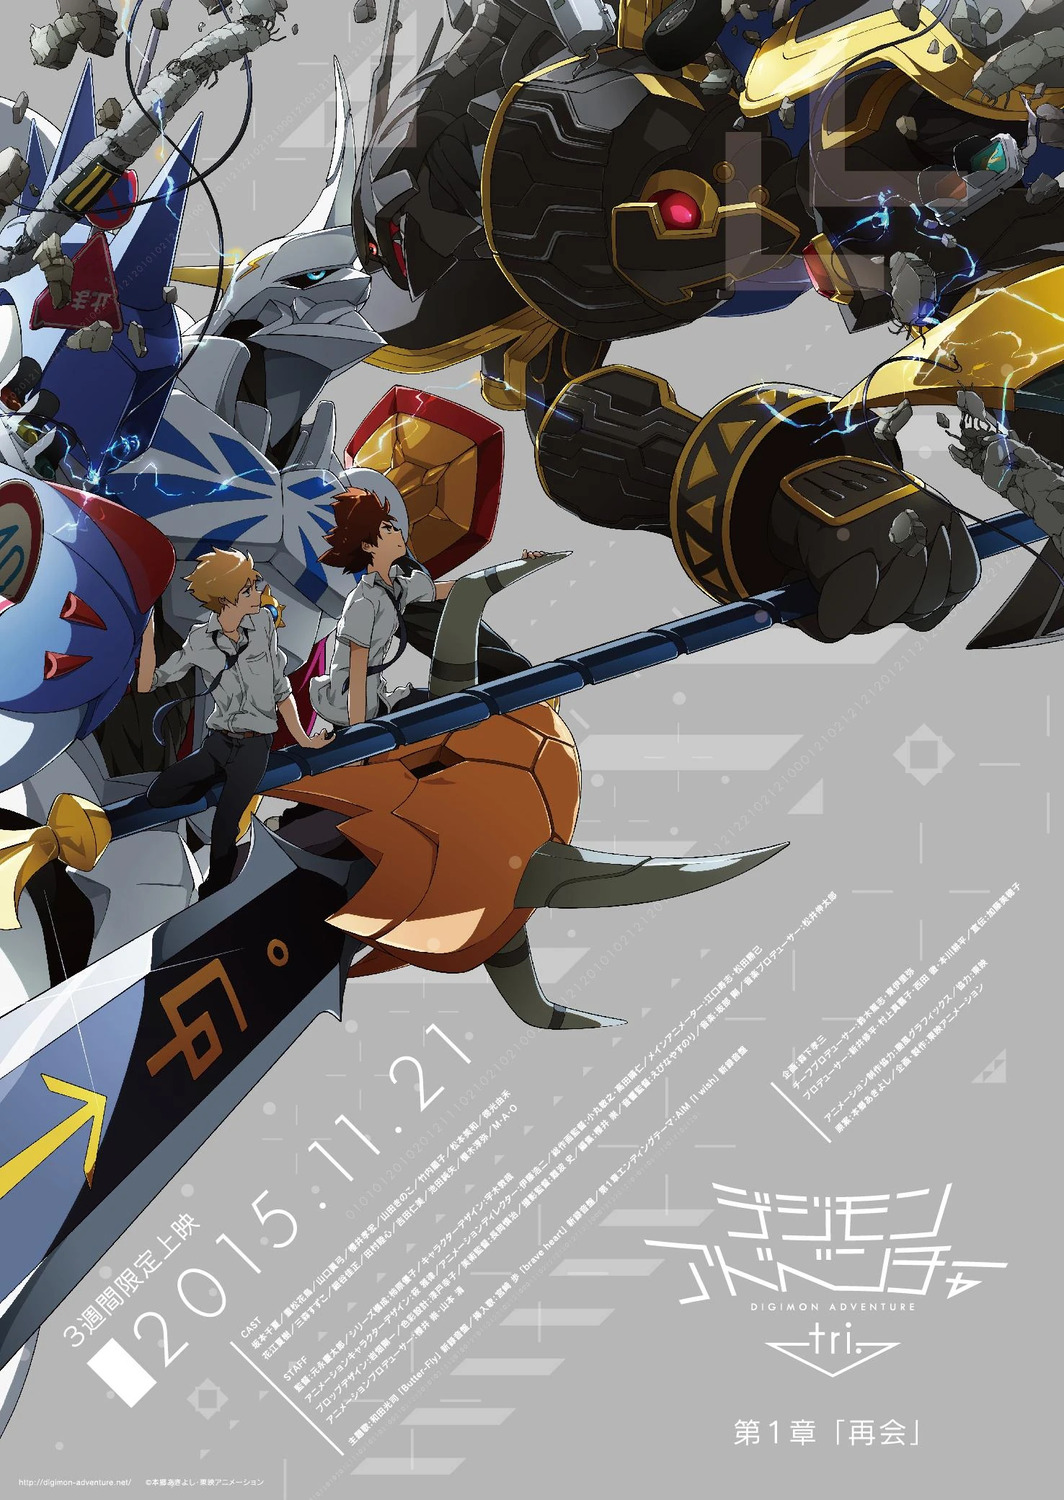 Extra Large Movie Poster Image for Digimon Adventure tri. 1: Saikai 